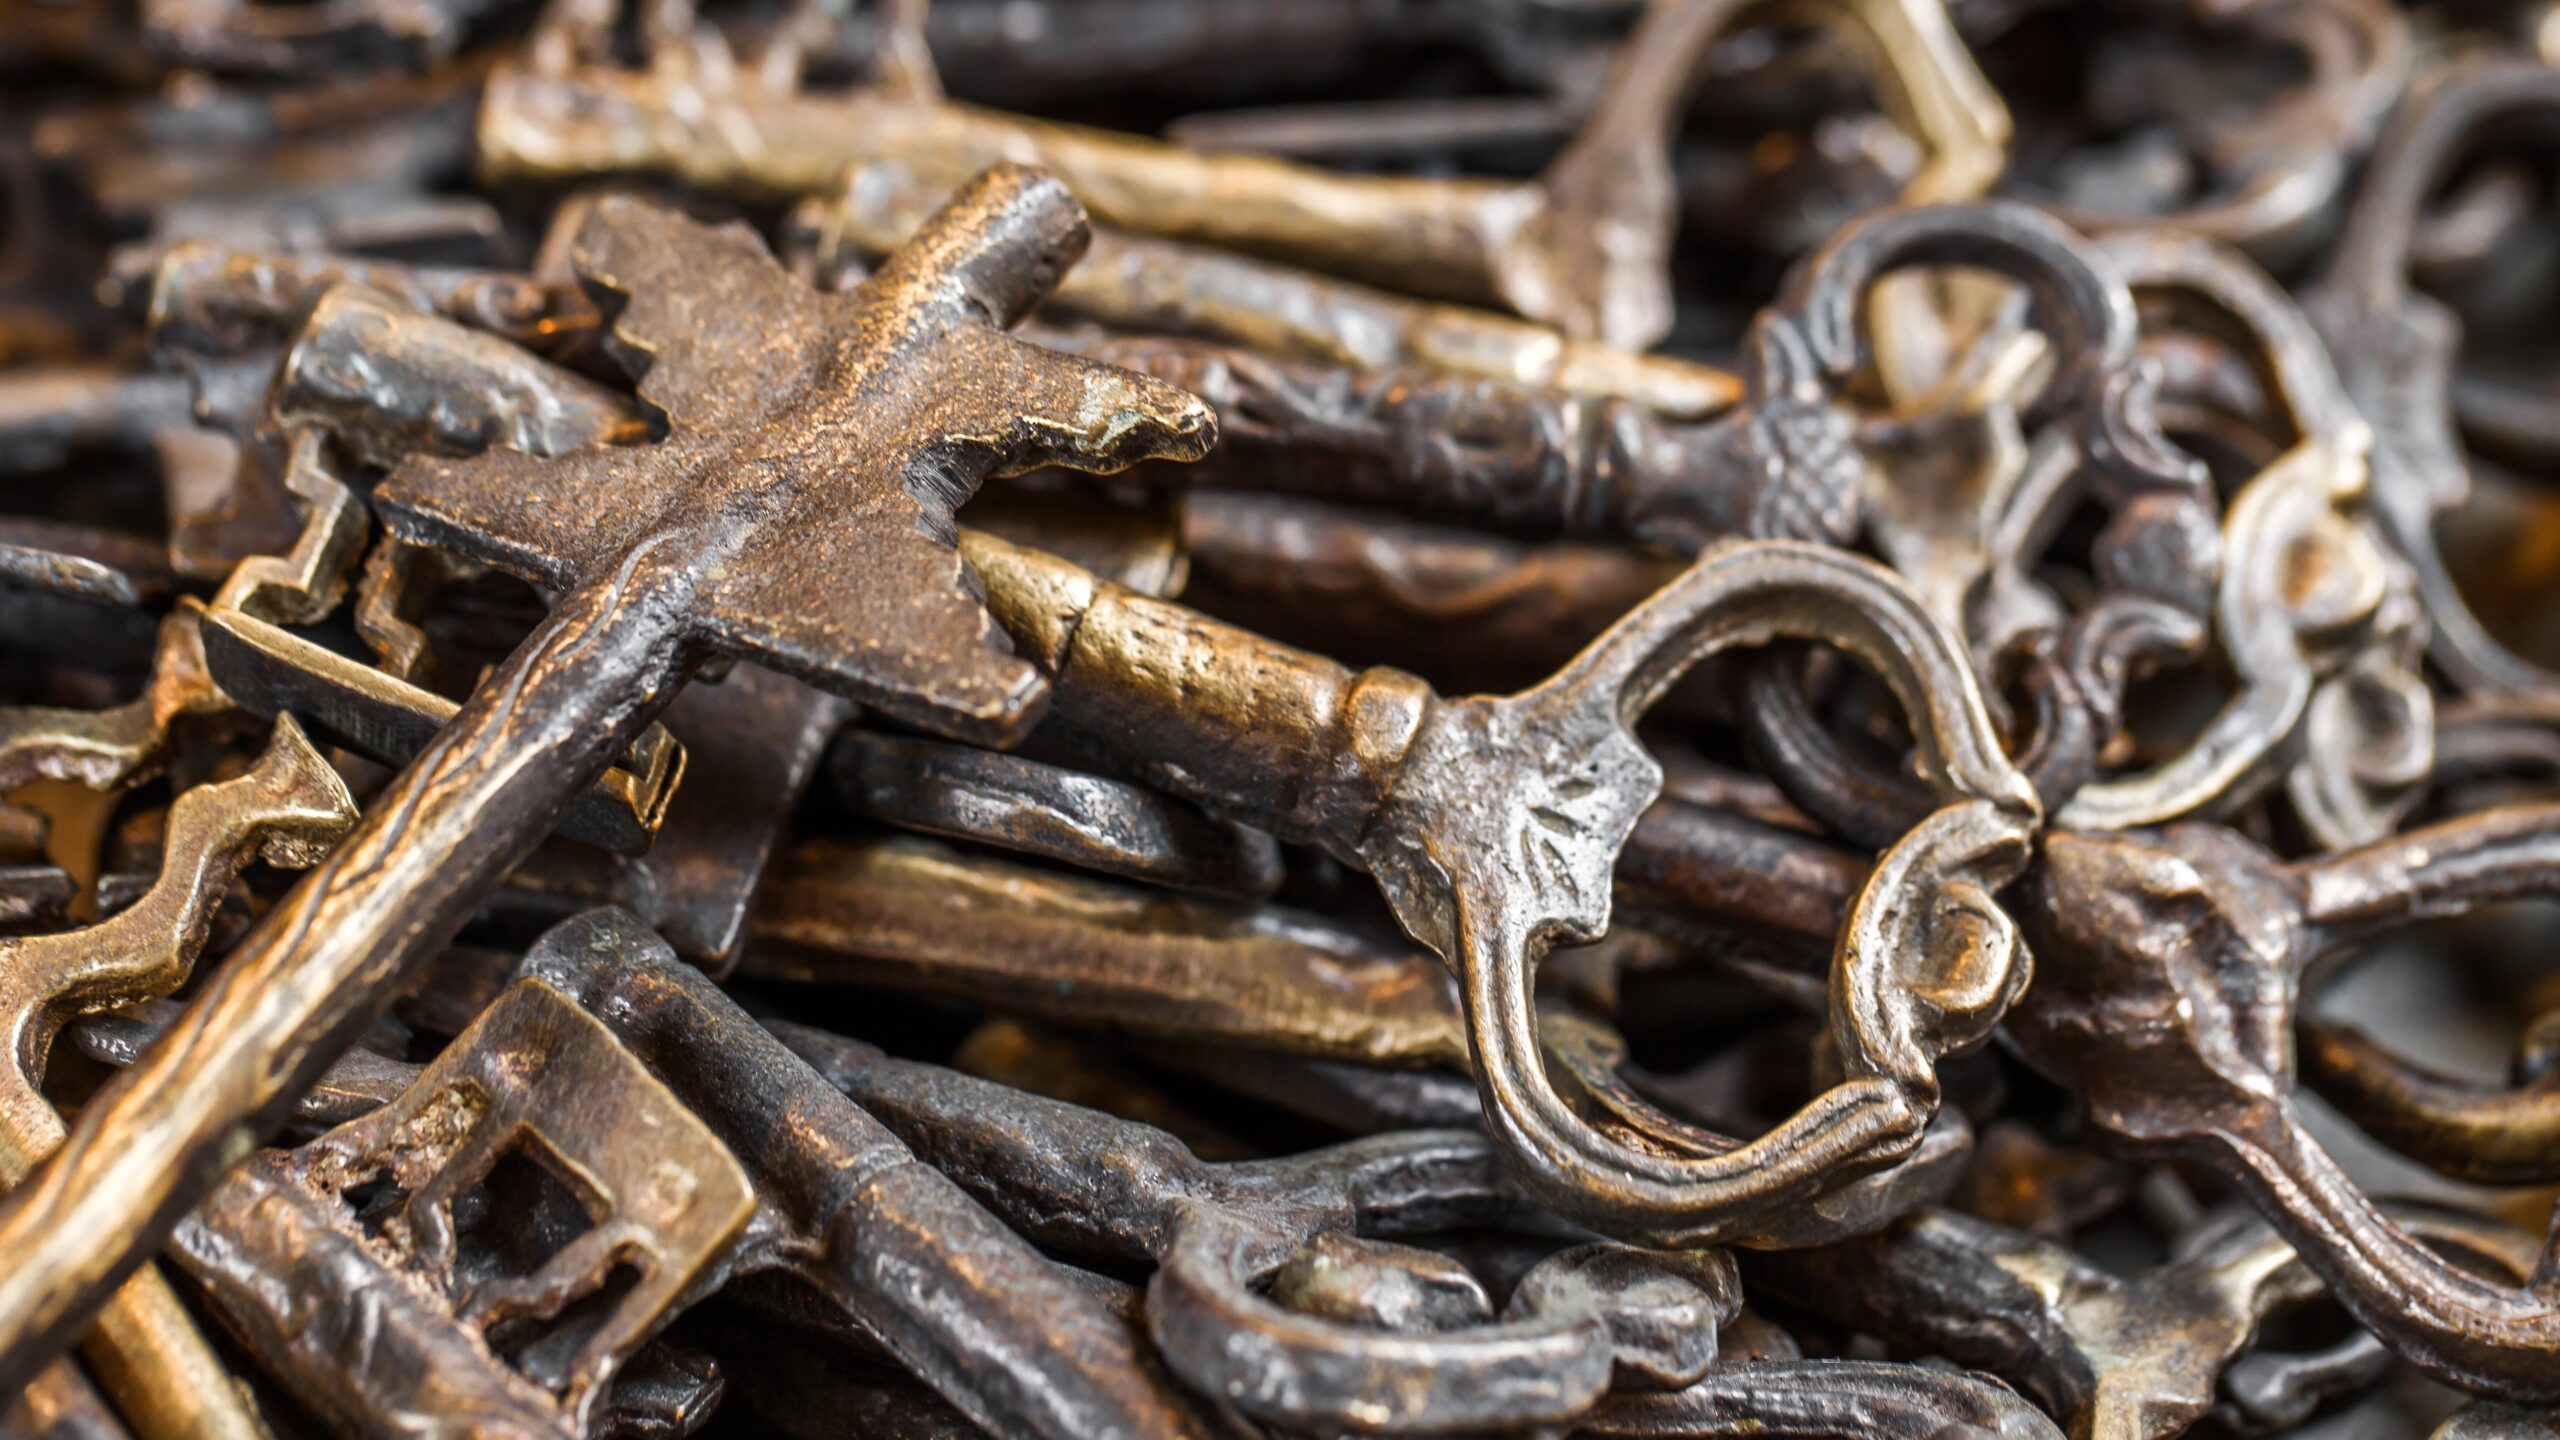 Image of a pile of metal, antique-looking skeleton keys.